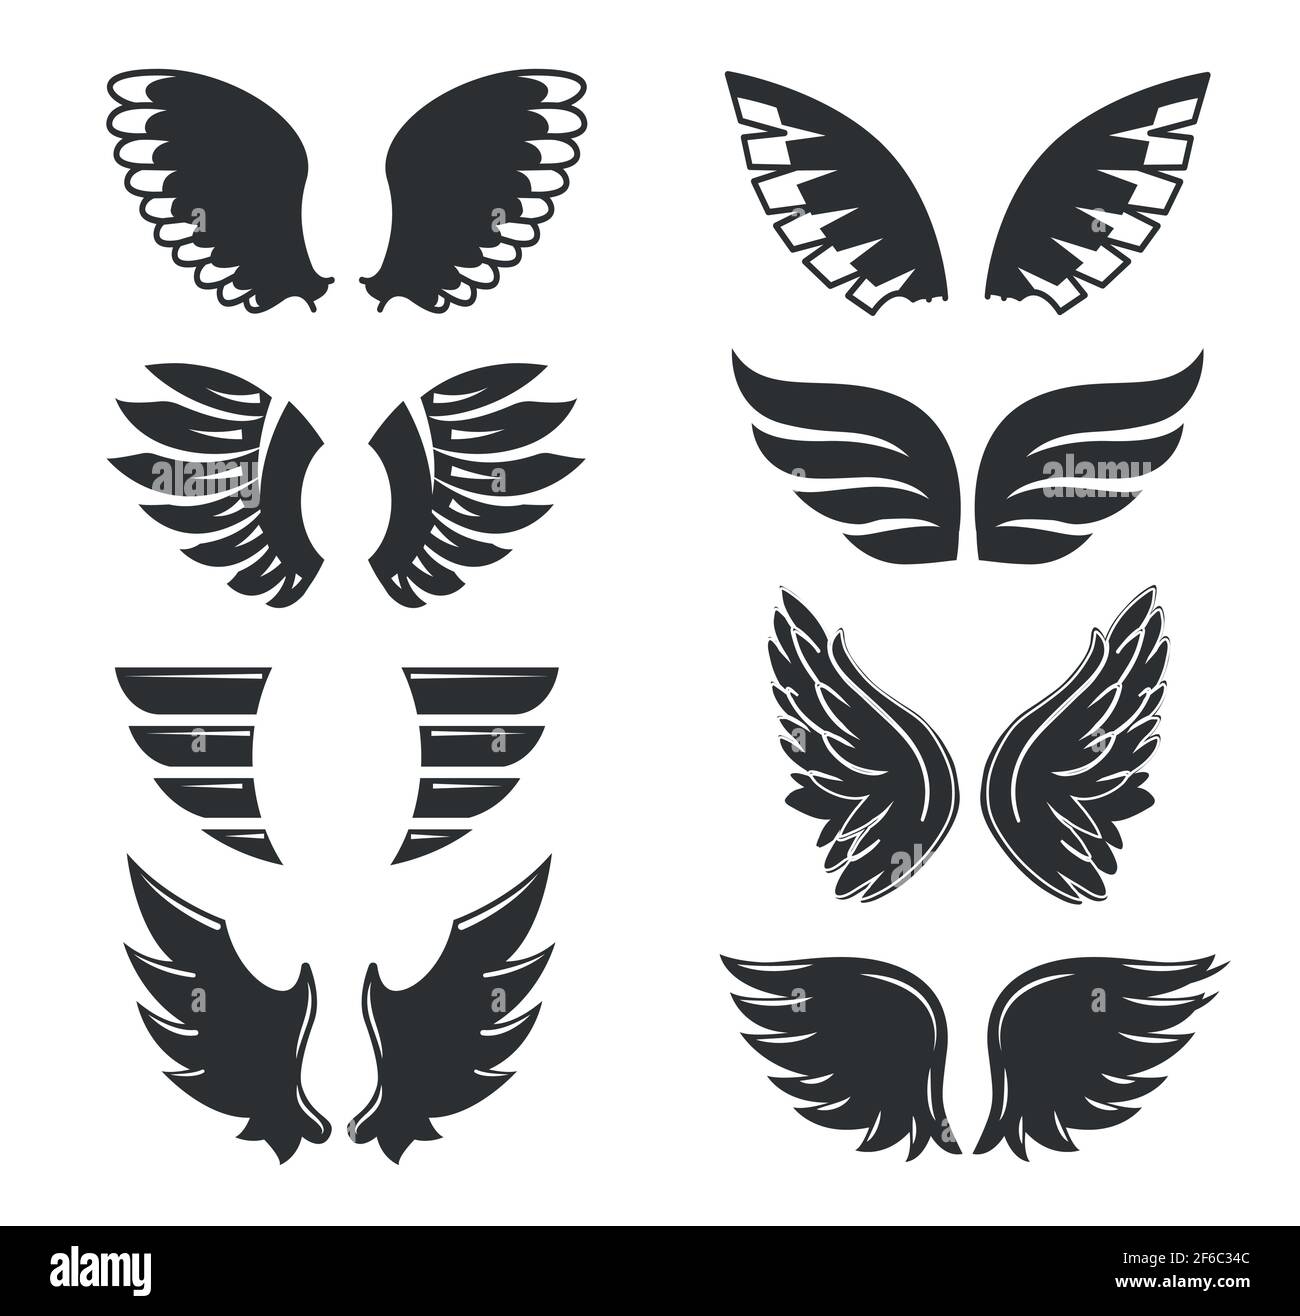 Ensemble d'ailes d'oiseau ou d'ange dessinées à la main de forme différente en position ouverte. Caniche profilée Illustration de Vecteur